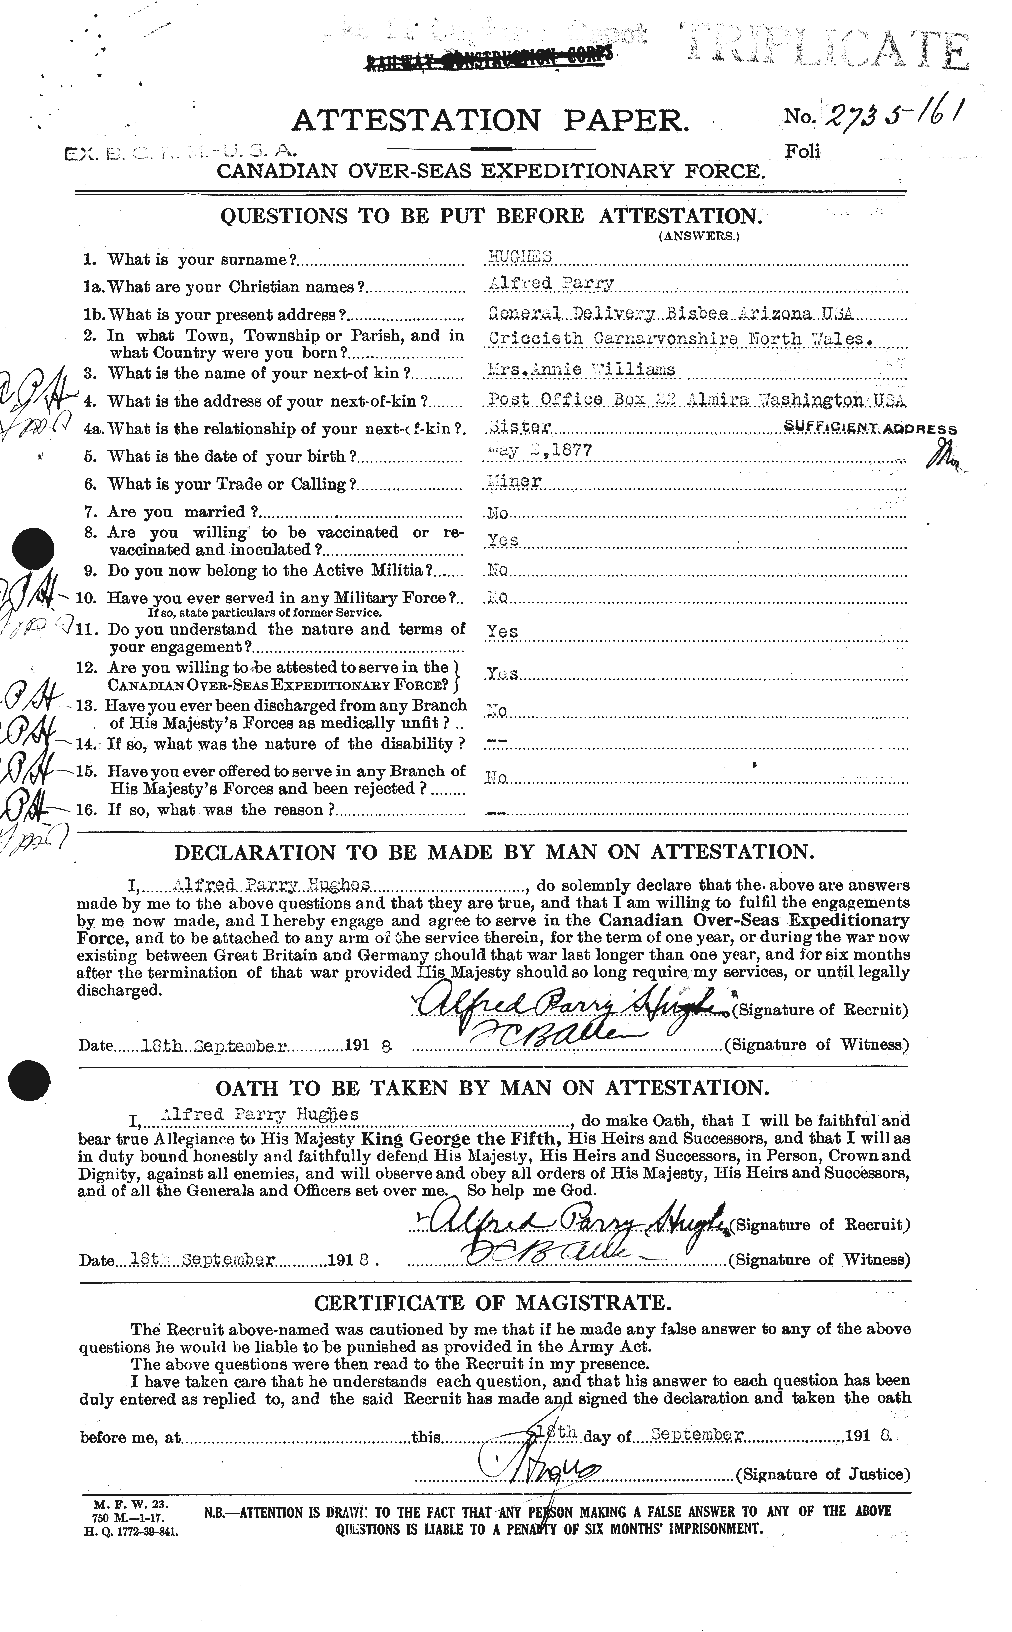 Dossiers du Personnel de la Première Guerre mondiale - CEC 402542a